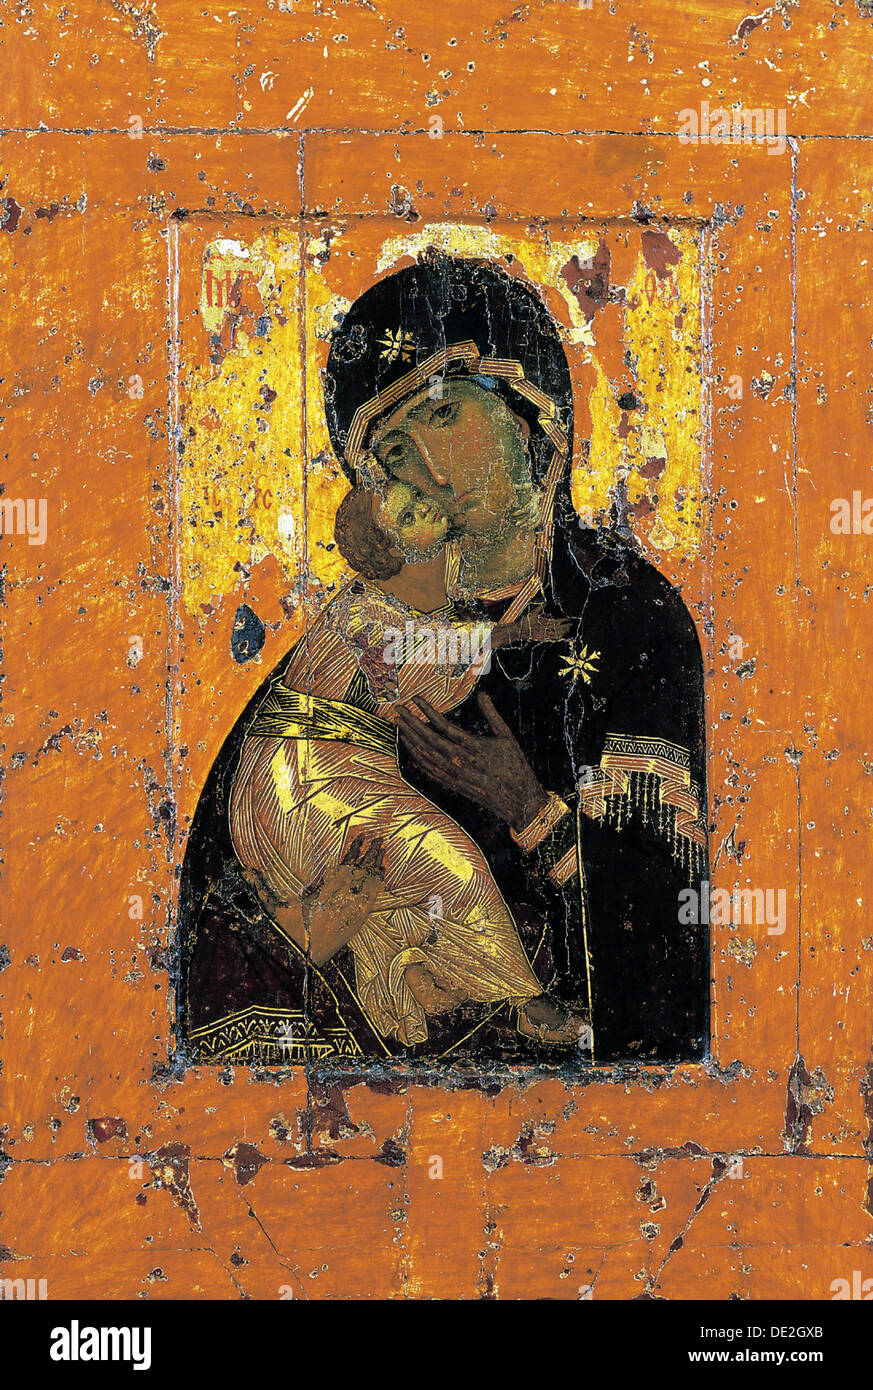 La Virgen de Vladimir, icono bizantino, a comienzos del siglo 12. Artista: Desconocido Foto de stock